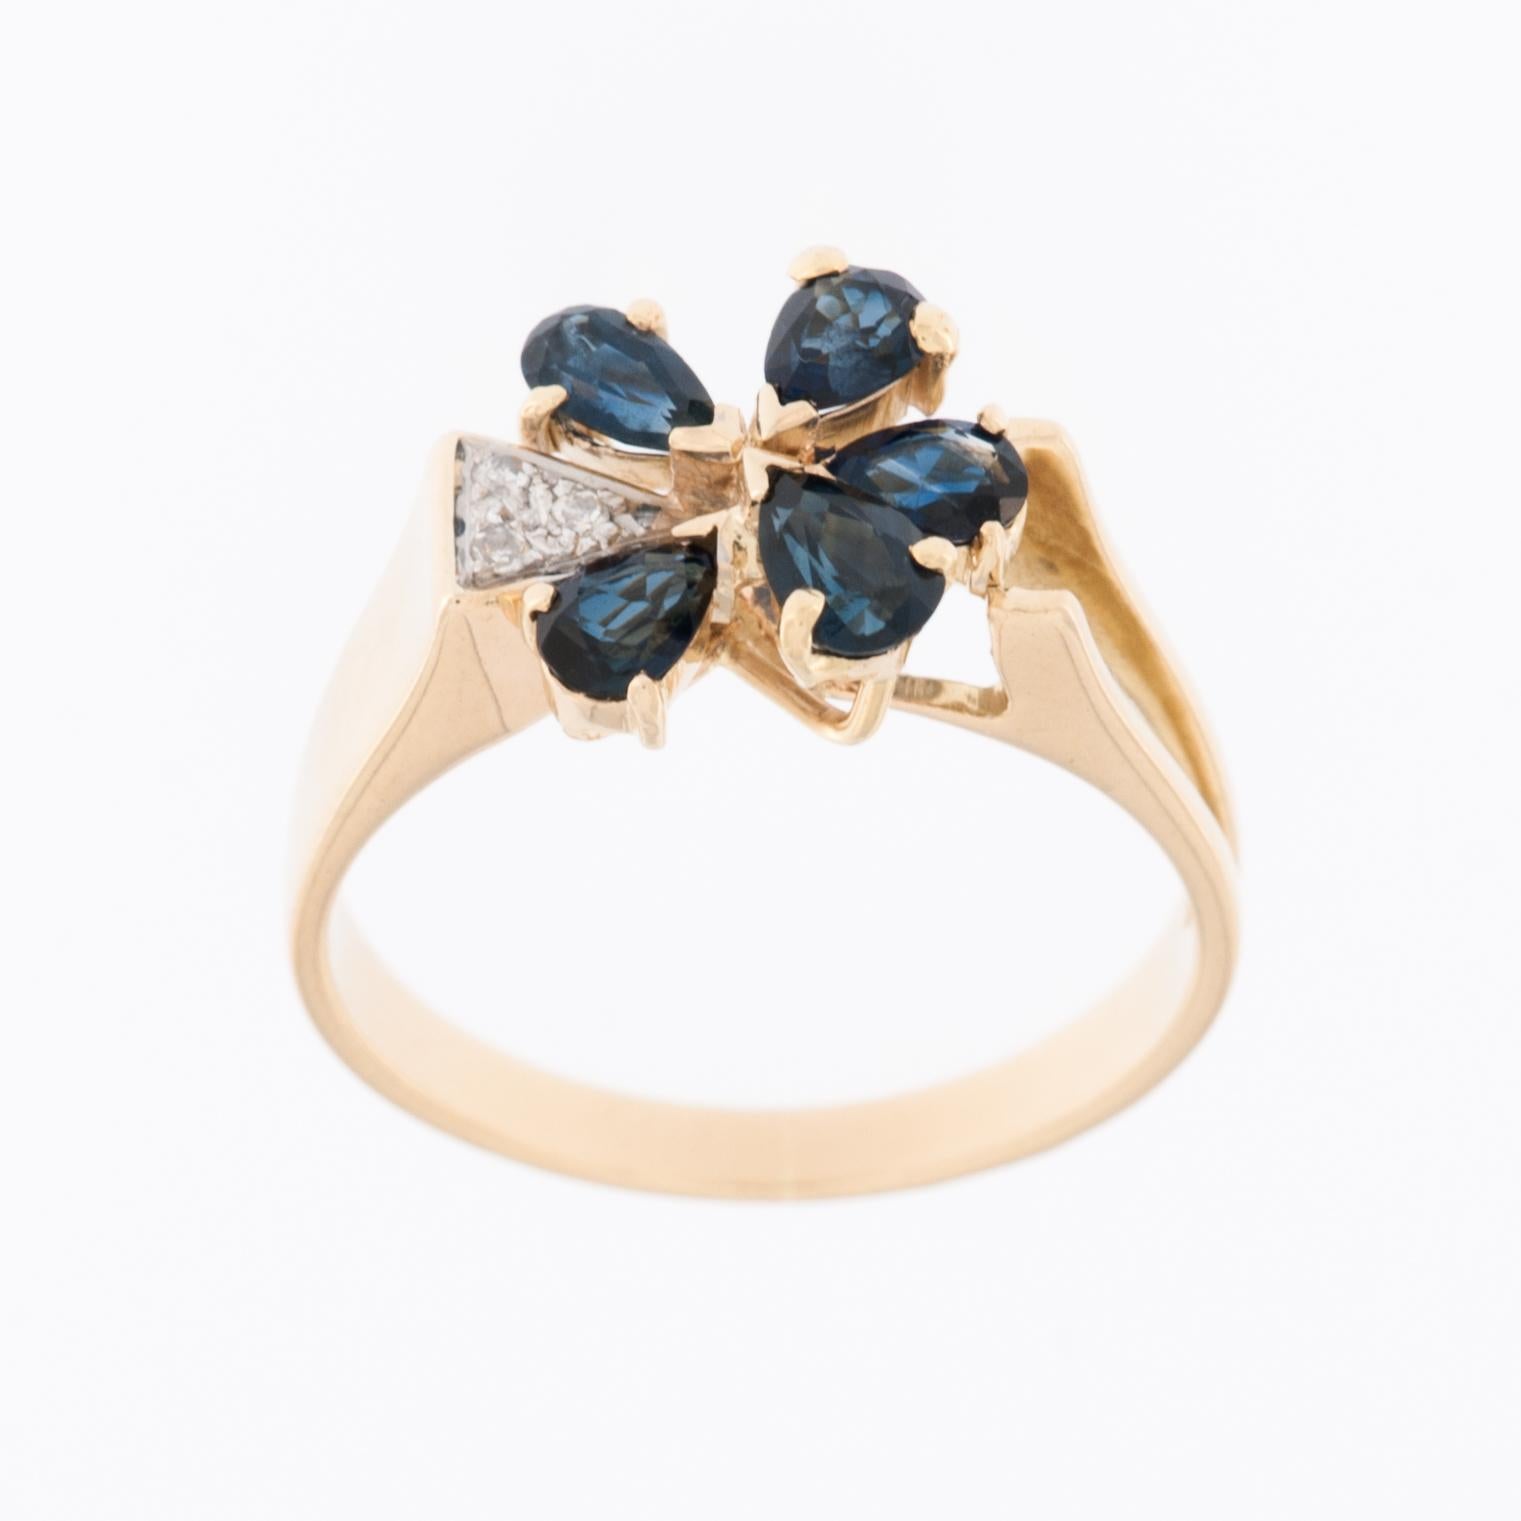 Der German Ring aus 14-karätigem Gelbgold mit Diamanten und Saphiren ist ein wunderschönes Schmuckstück, das für sein elegantes und kompliziertes Blumendesign bekannt ist. 

Der Ring ist aus 14-karätigem (14kt) Gelbgold gefertigt, das ihm ein warmes